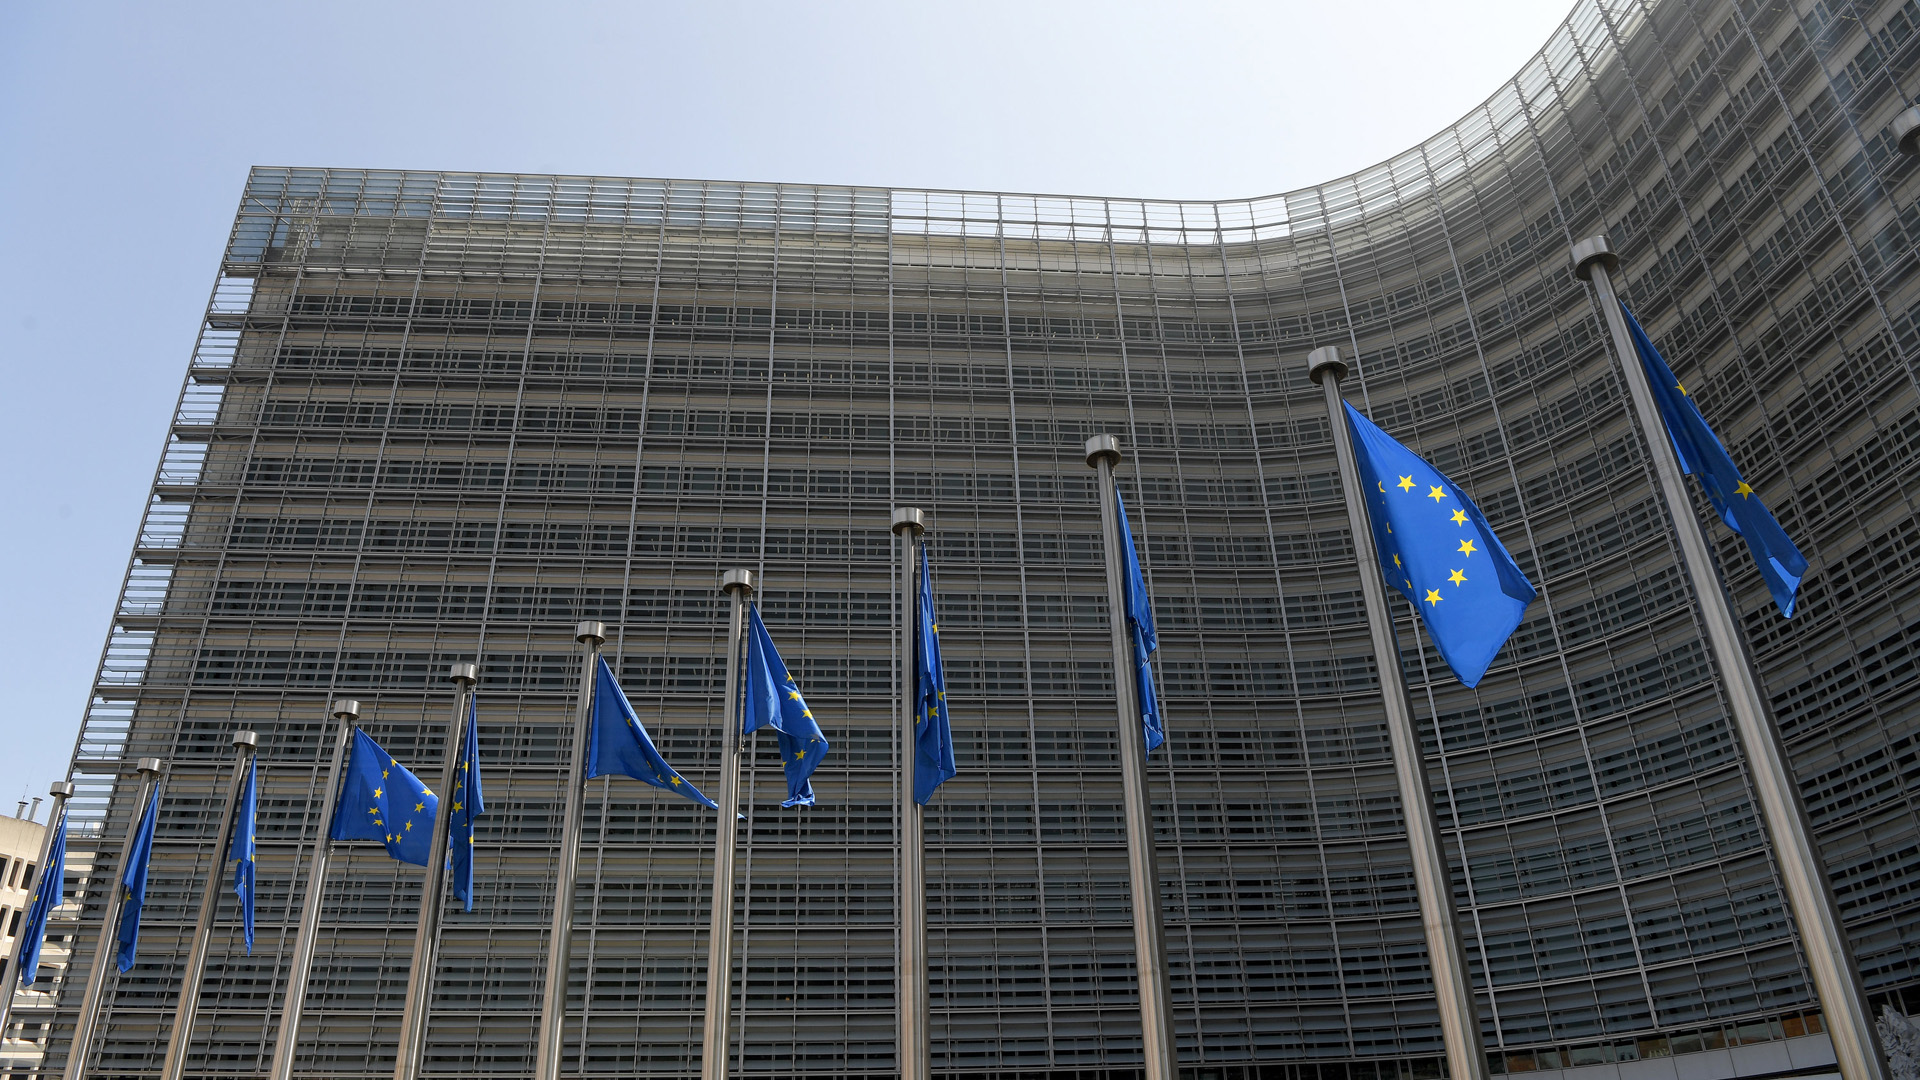 Vor dem Berlaymont-Gebäude in Brüssel, der Sitz der EU-Kommission, stehen EU-Flaggen.